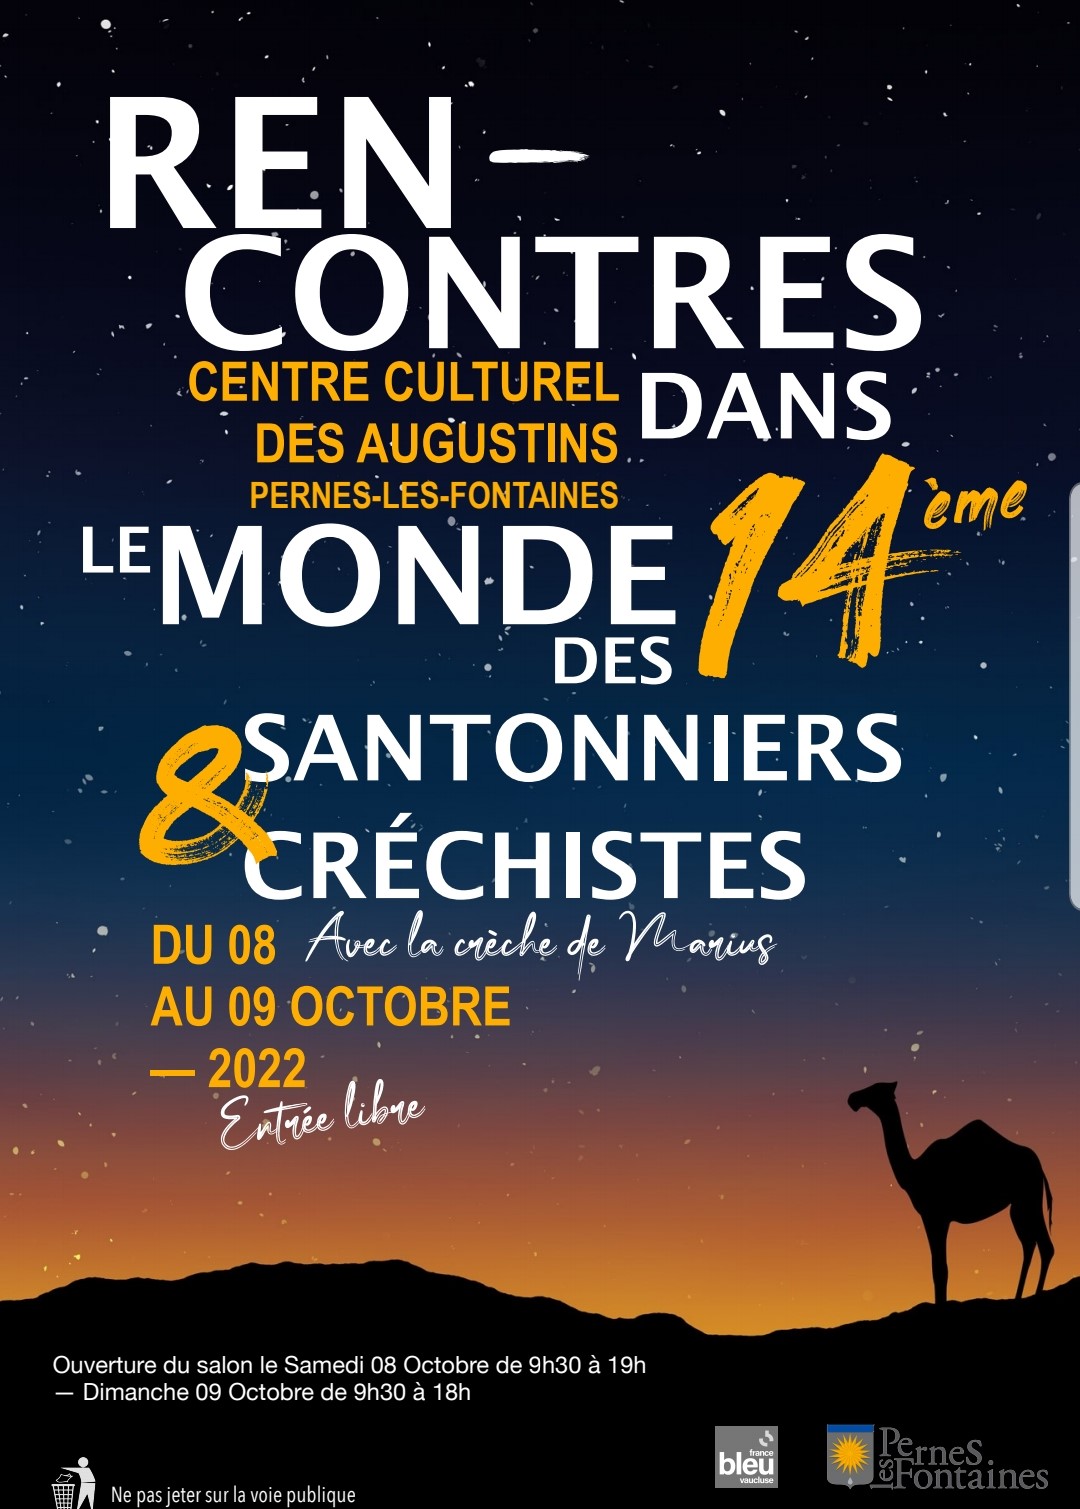 Affiche de la 14ème "Rencontres dans le monde des Santonniers et Créchistes" de Pernes-les-Fontaines les 8 et 9 octobre 2022